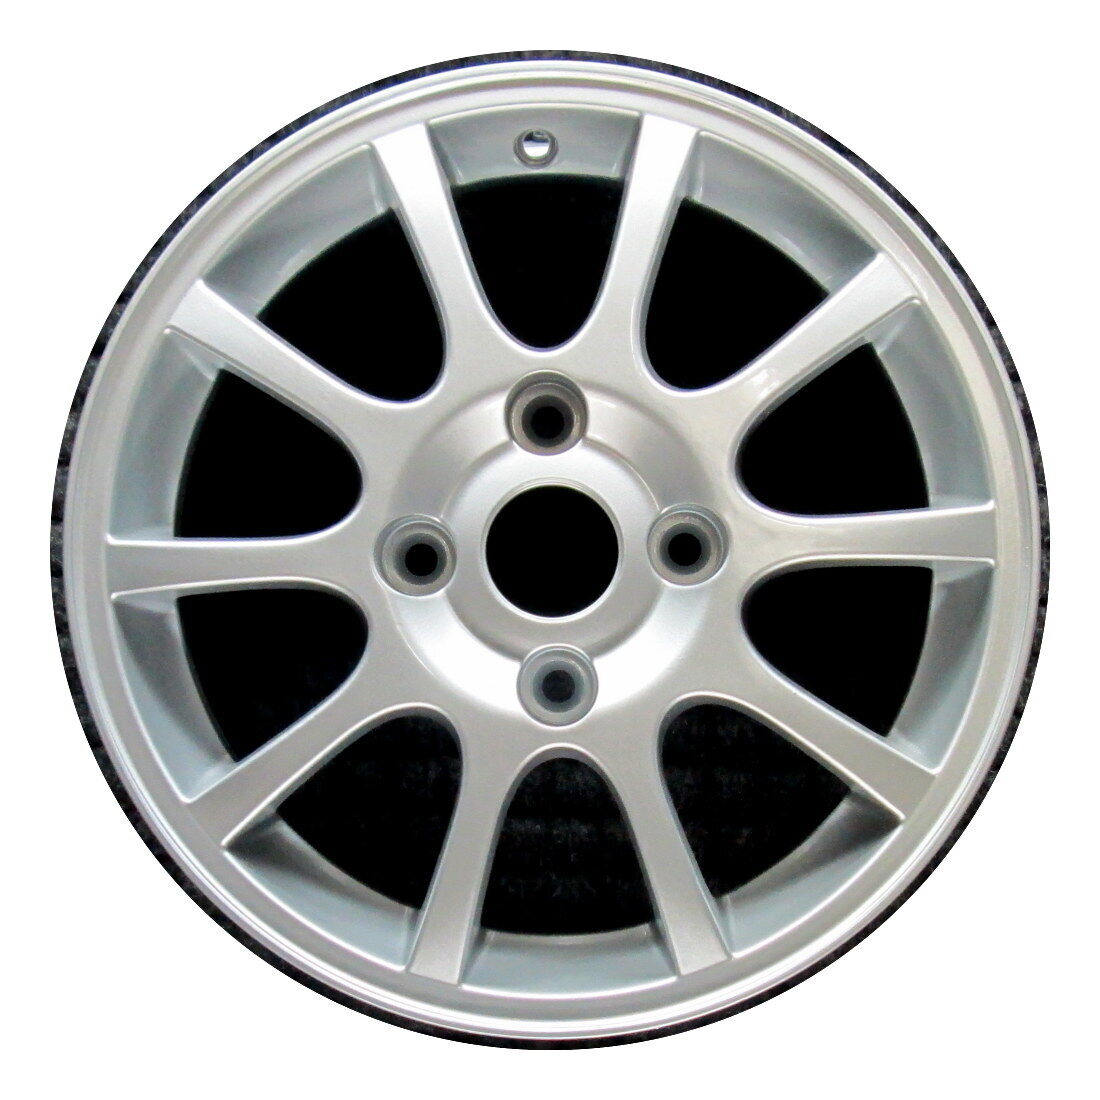 Wheel Rim Volvo S40 V40 15 2000-2004 306186115 30618288 OEM Factory OE 70249